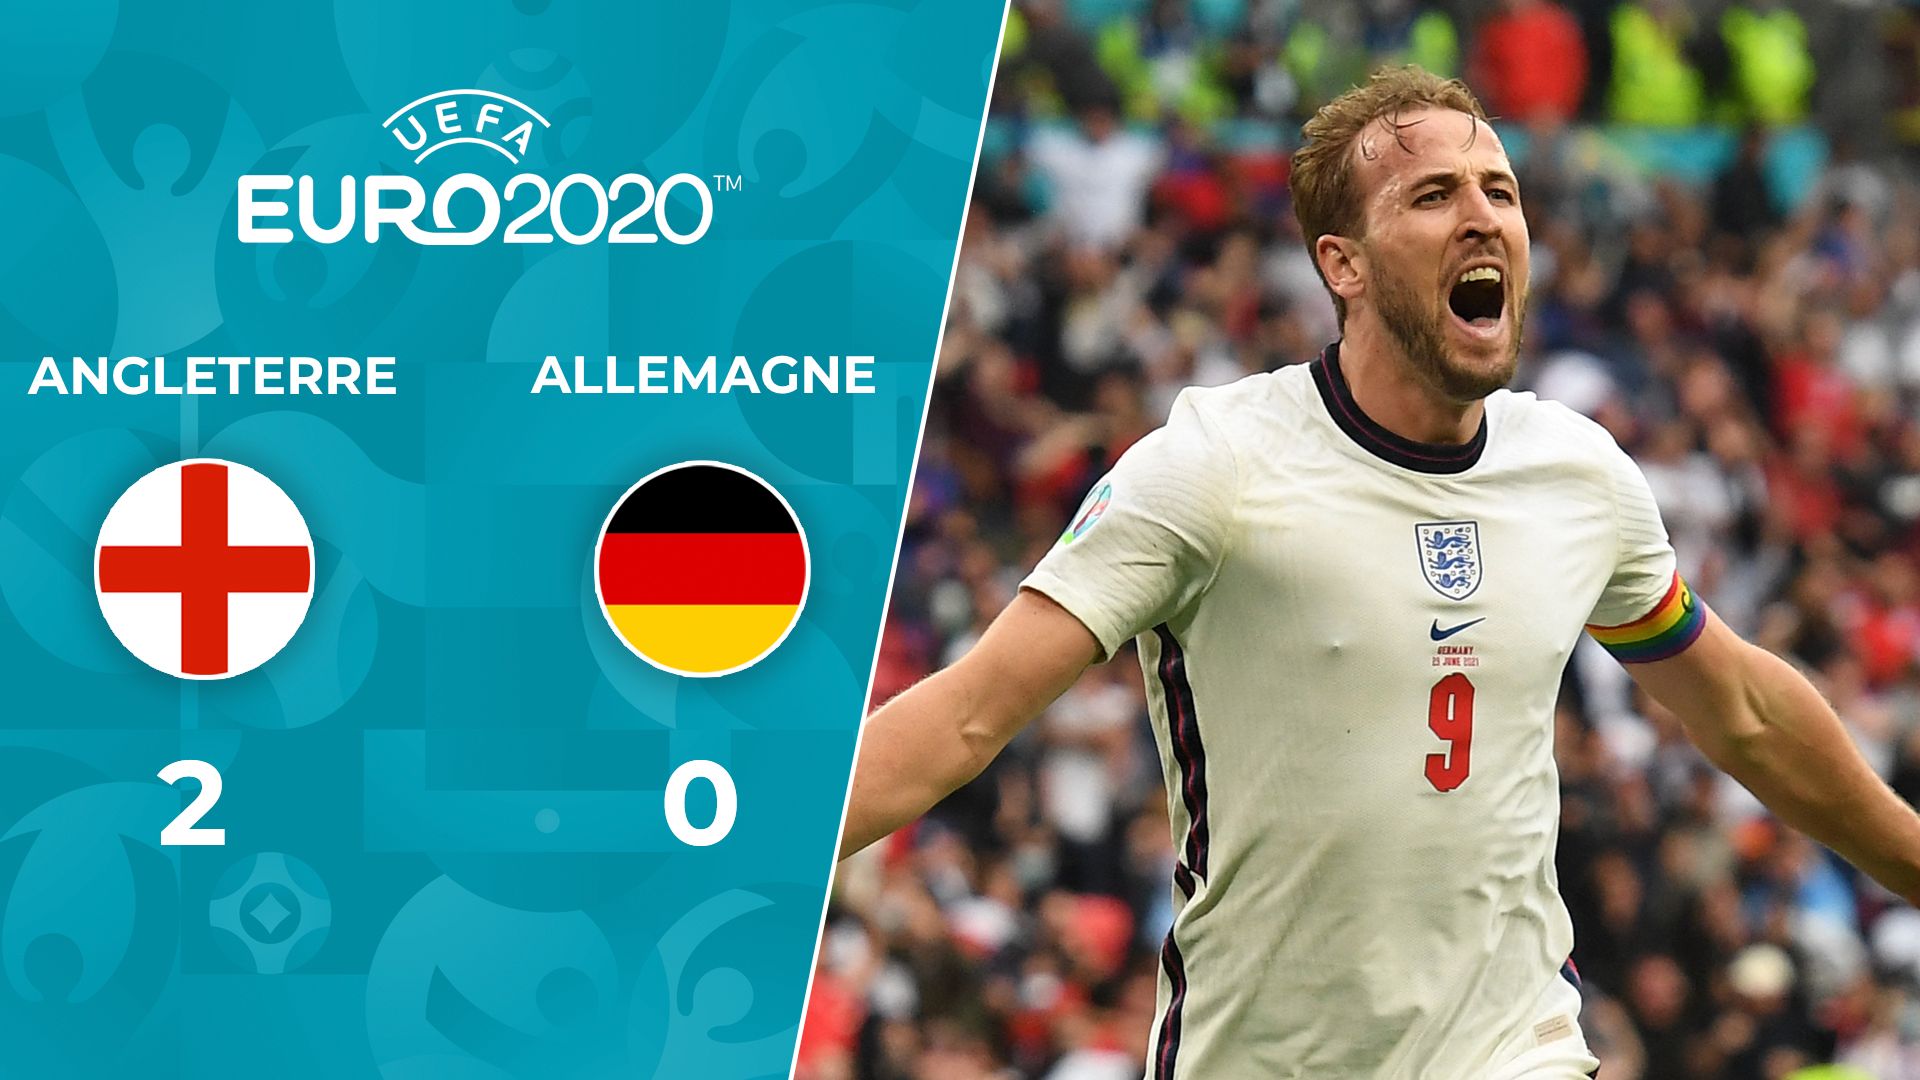 Angleterre - Allemagne : Le Résumé du Match